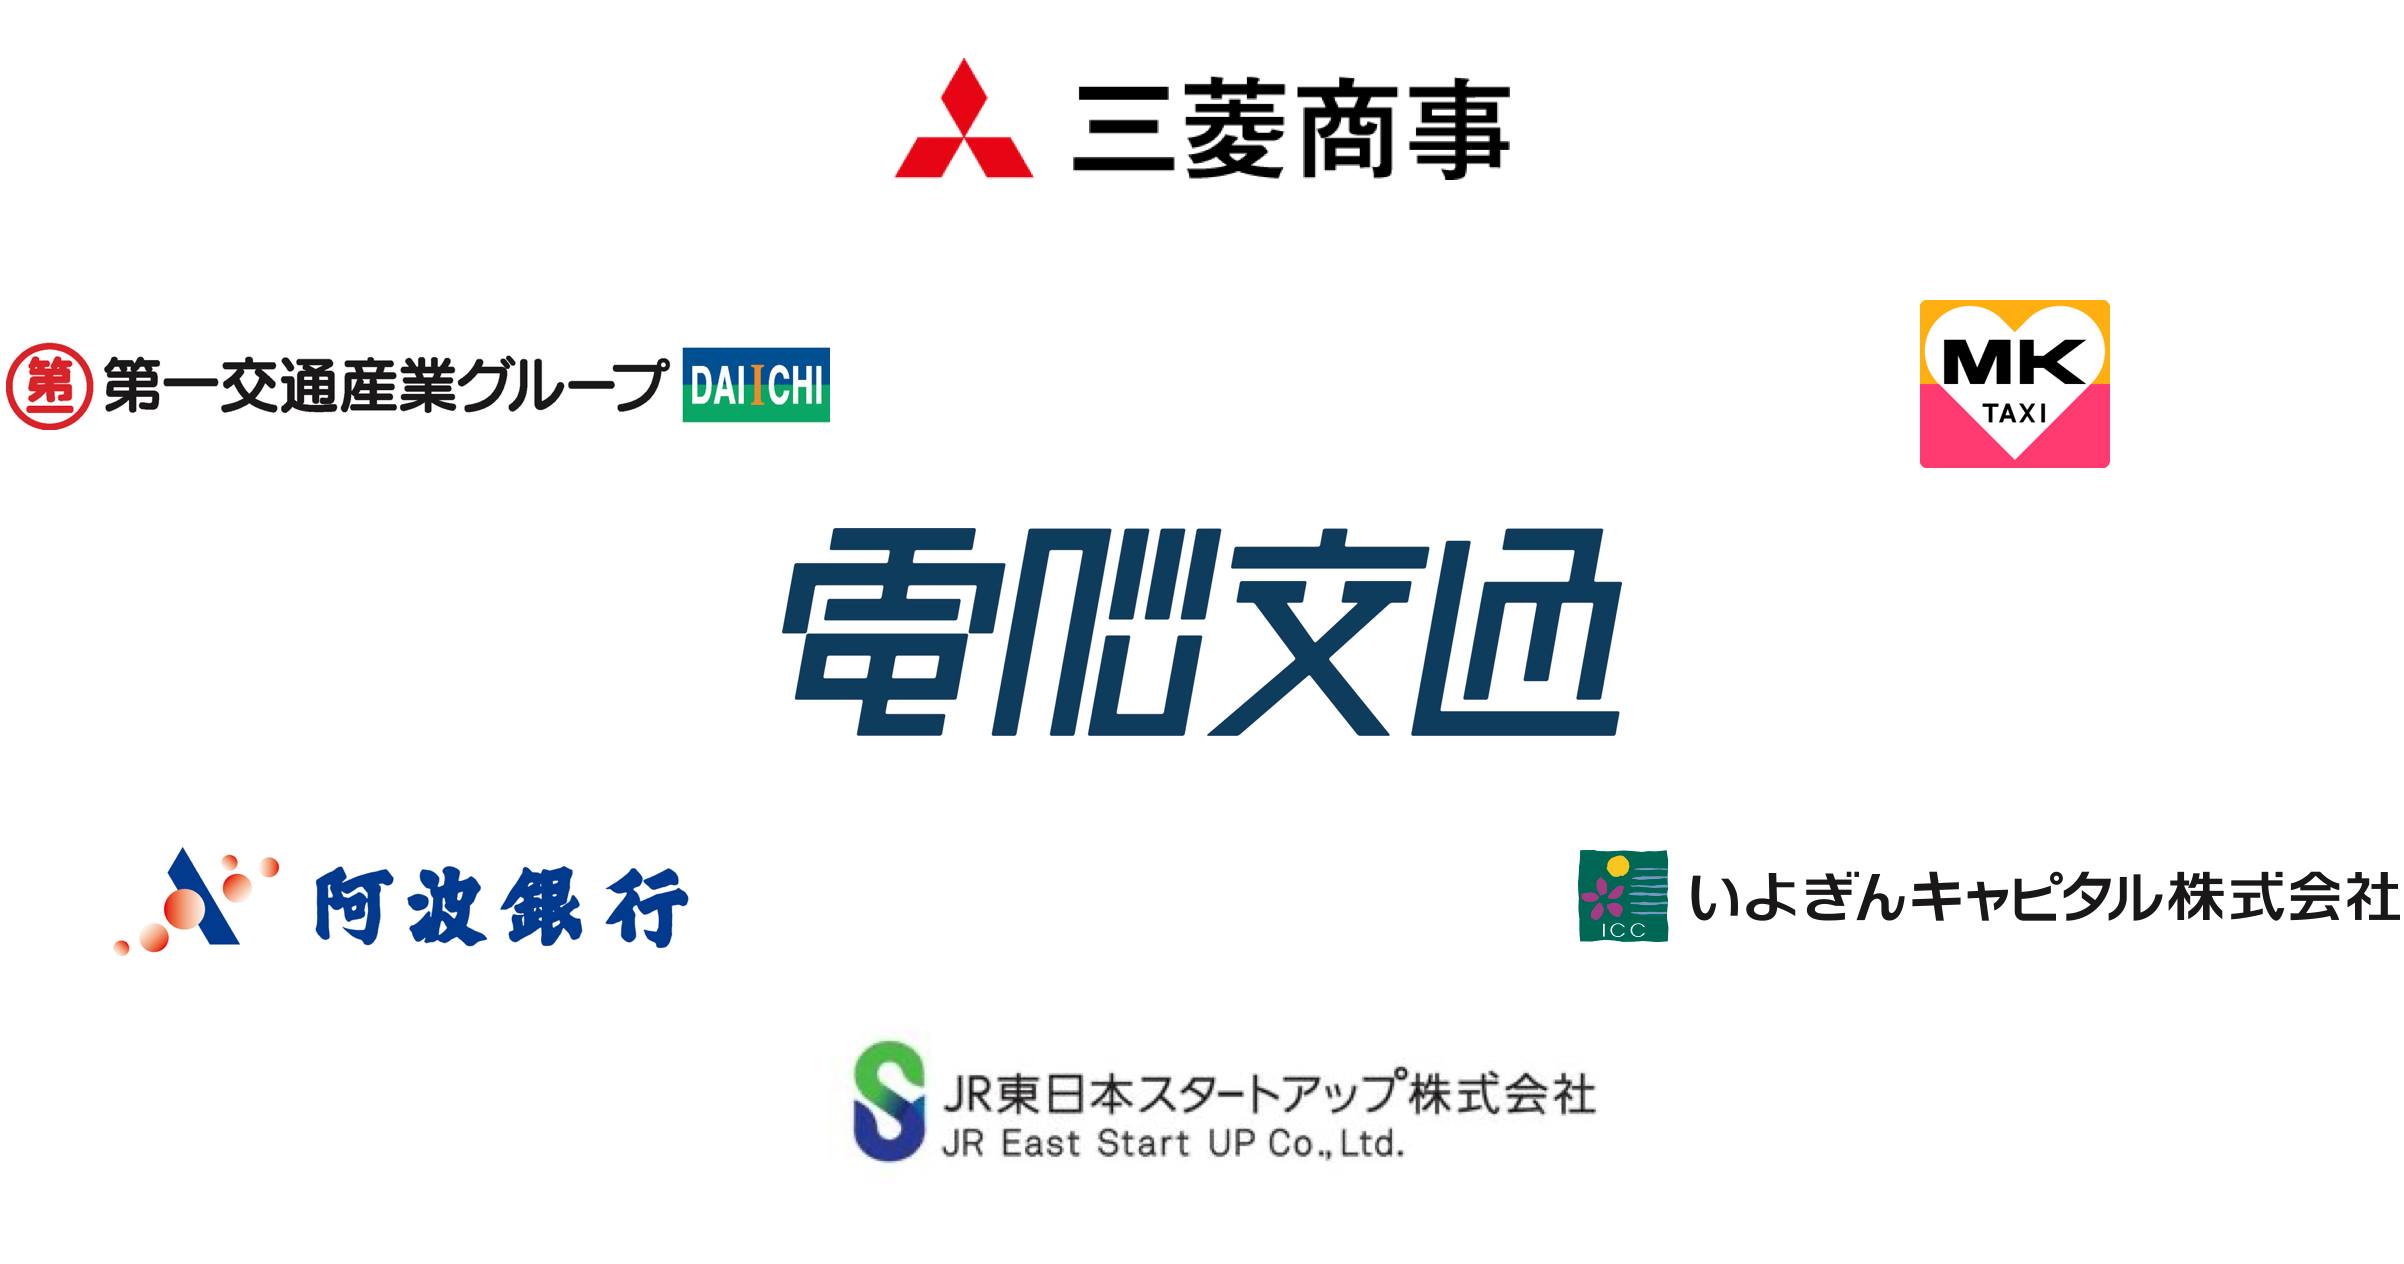 今回のラウンドでは三菱商事やJR東日本スタートアップなどが新規の投資家として参画。各社とは事業連携も進めていく計画だ